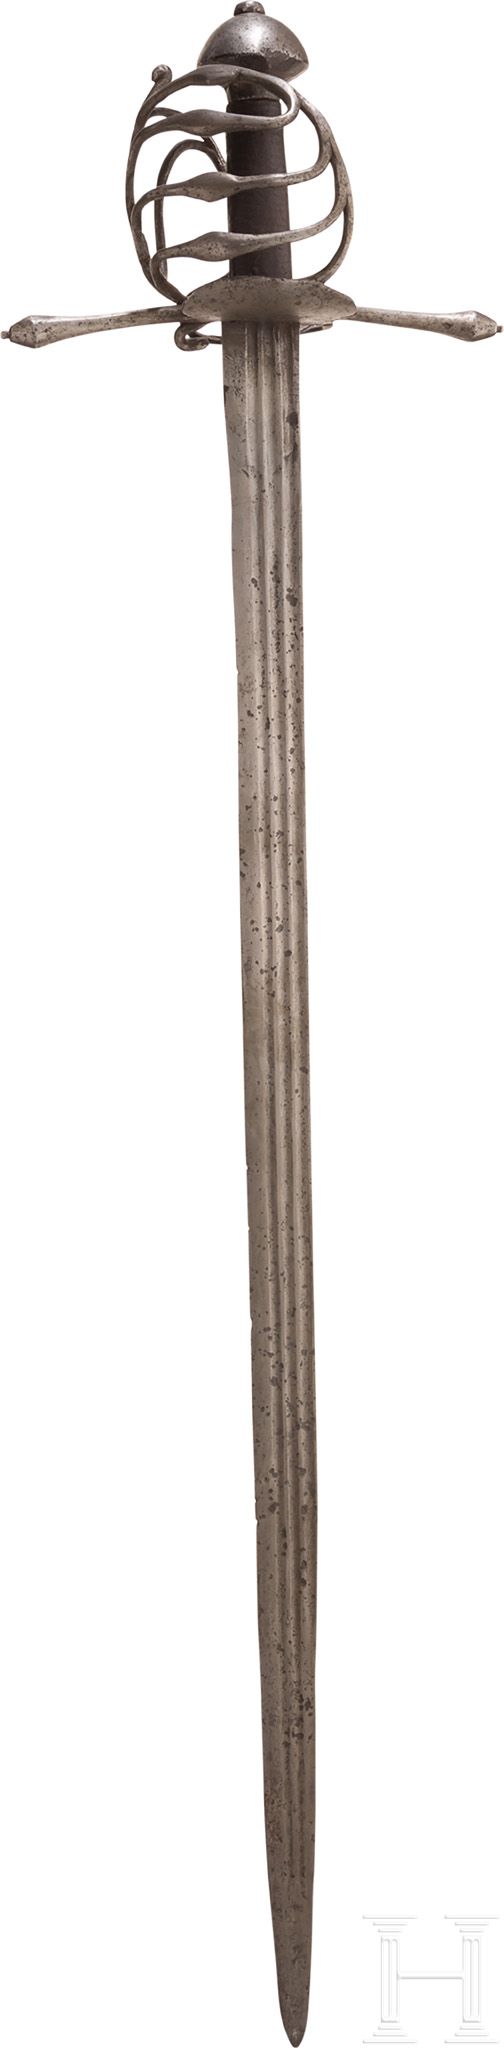 Militärisches Korbschwert, süddeutsch/steirisch, um 1580Kräftige Rückenklinge mit zweischneidiger